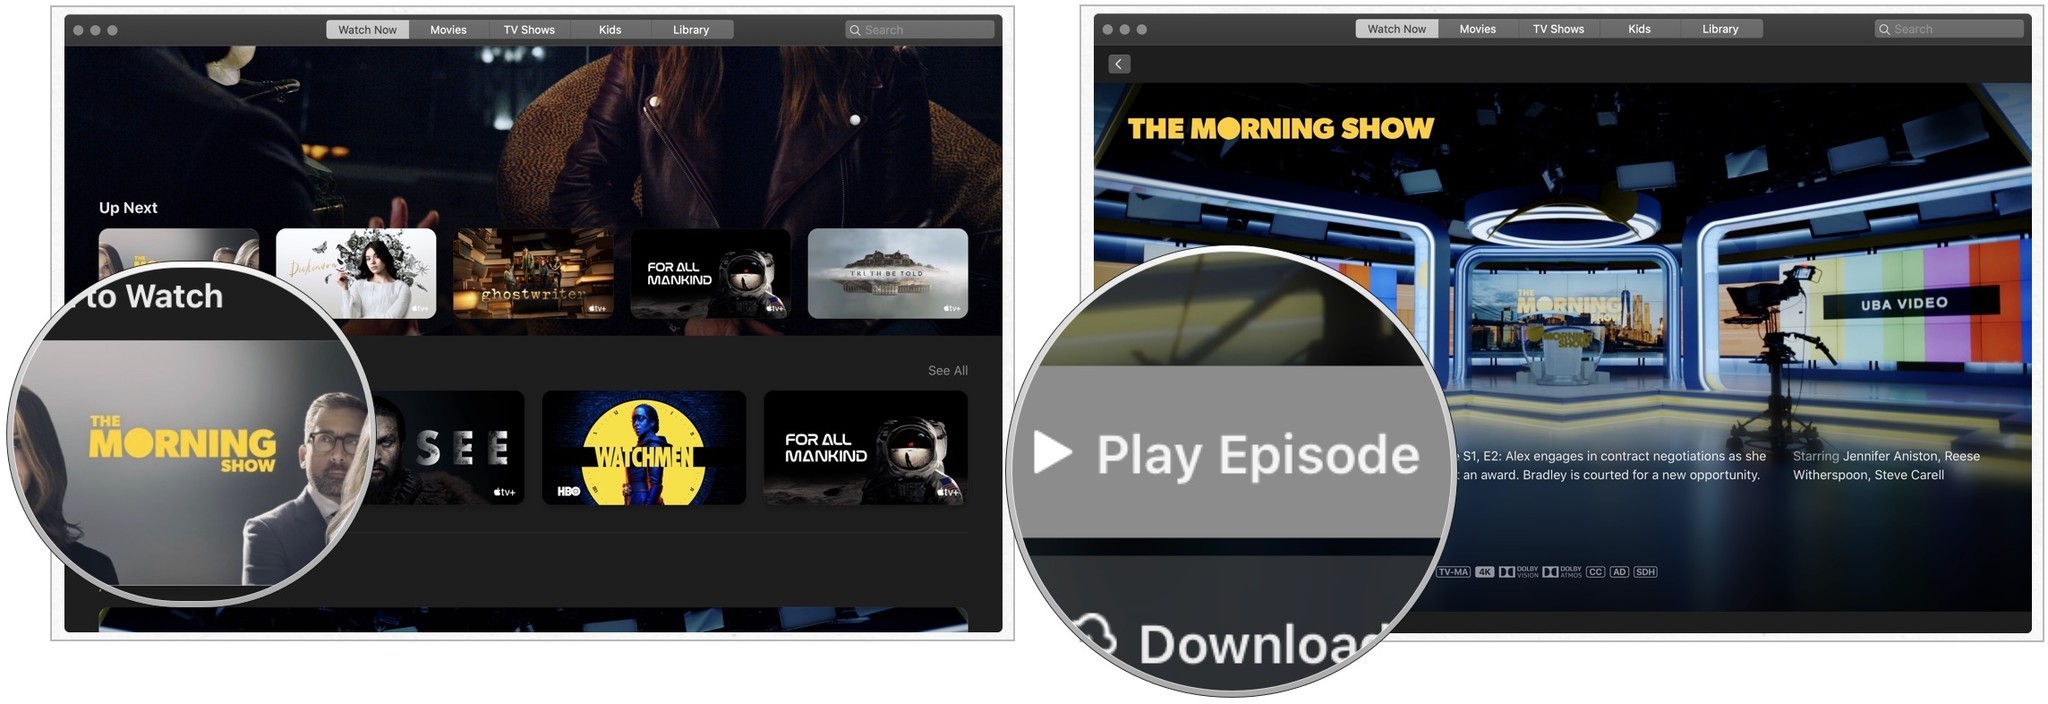 Чтобы смотреть на Mac, откройте приложение TV, нажмите на шоу Apple TV+ в списке «На очереди» или найдите его в разделе «Что посмотреть».  Нажмите «Воспроизвести эпизод» или нажмите «Загрузить», чтобы сохранить его для просмотра в автономном режиме.